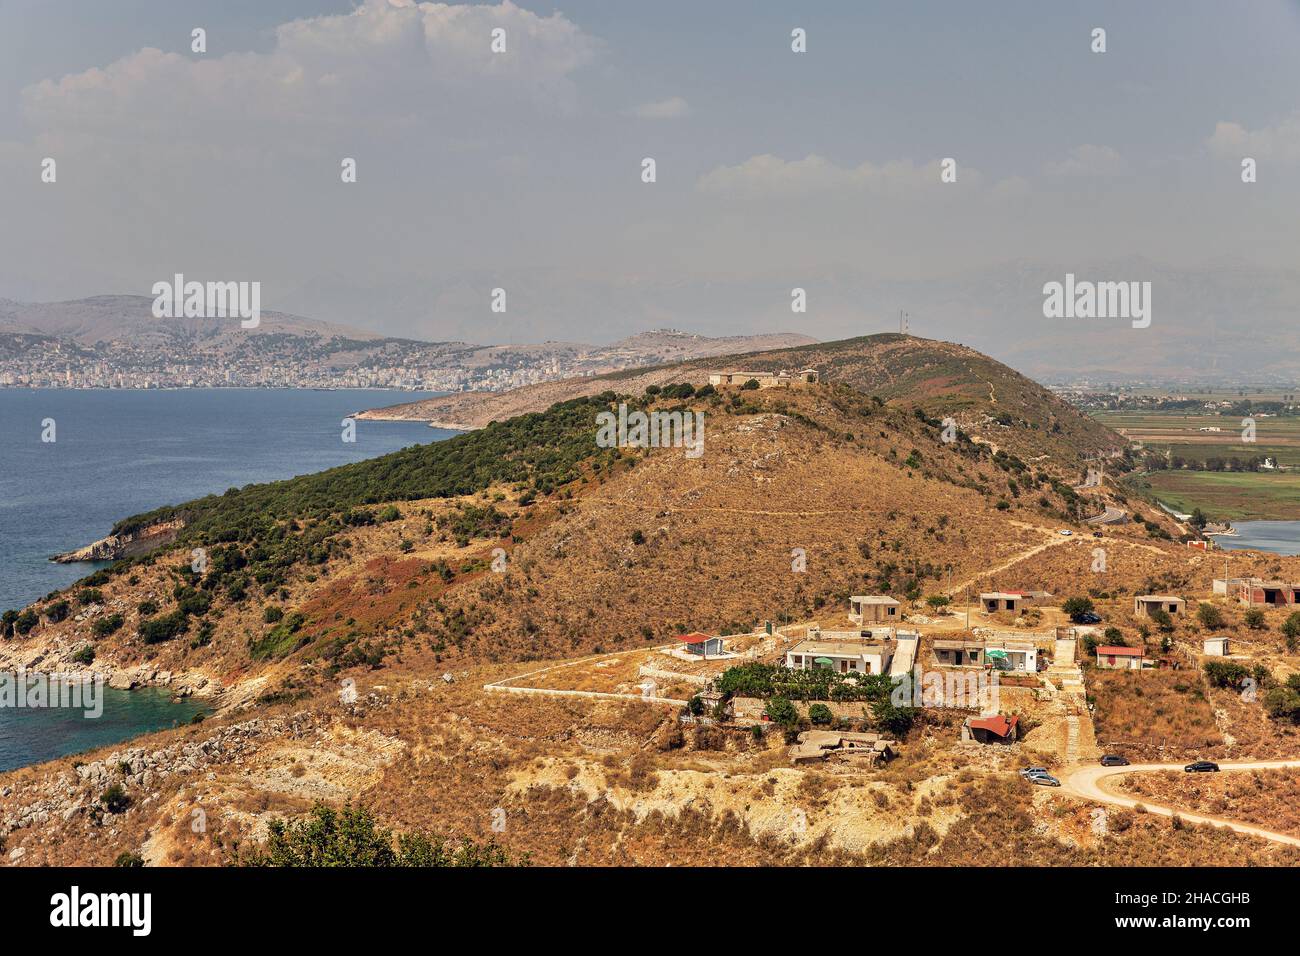 Landschaft in Südalbanien mit Militärfestung auf dem Hügel in der Ferne Stockfoto